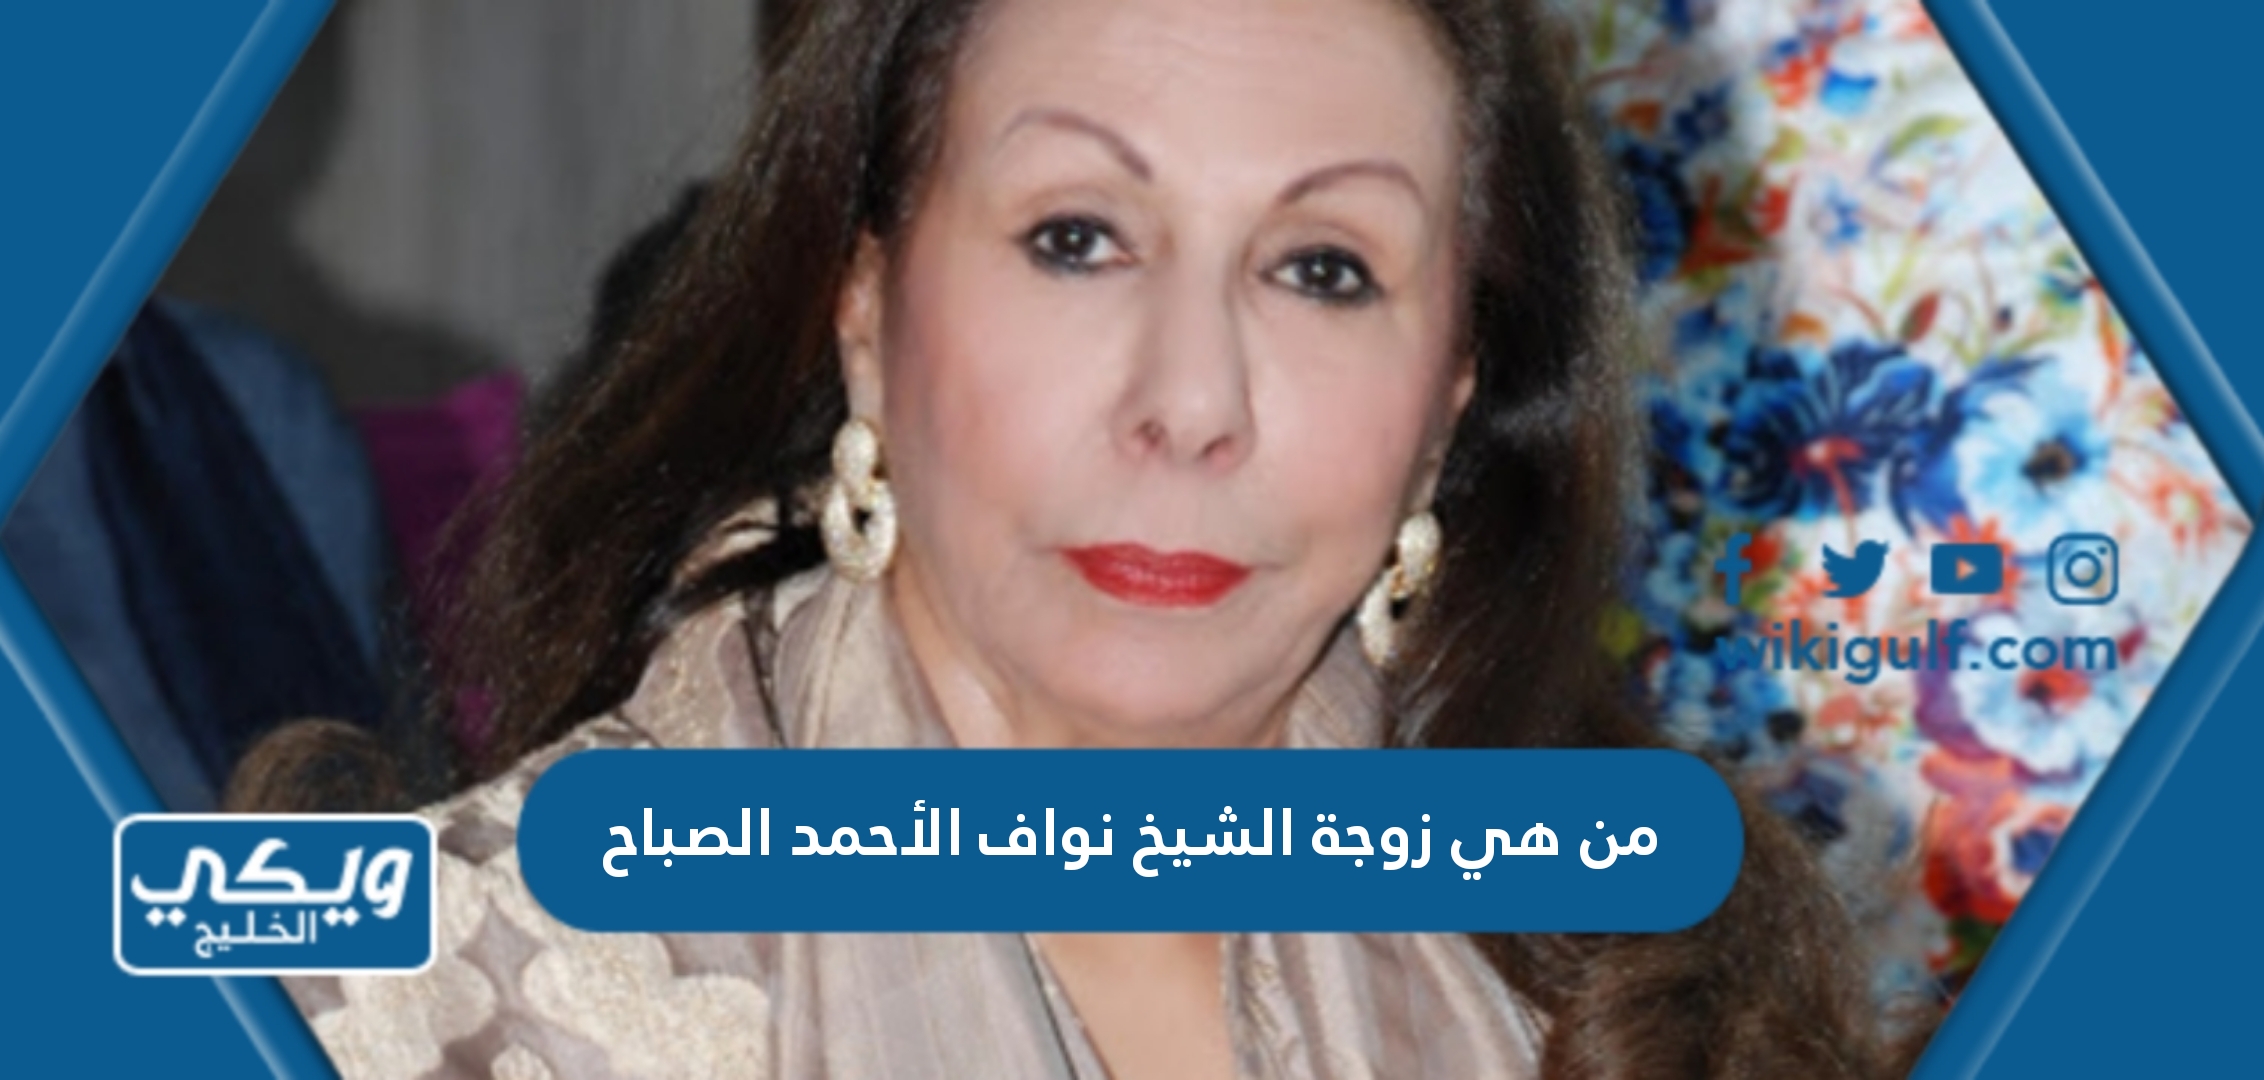 من هي زوجة الشيخ نواف الأحمد الجابر الصباح ويكيبيديا